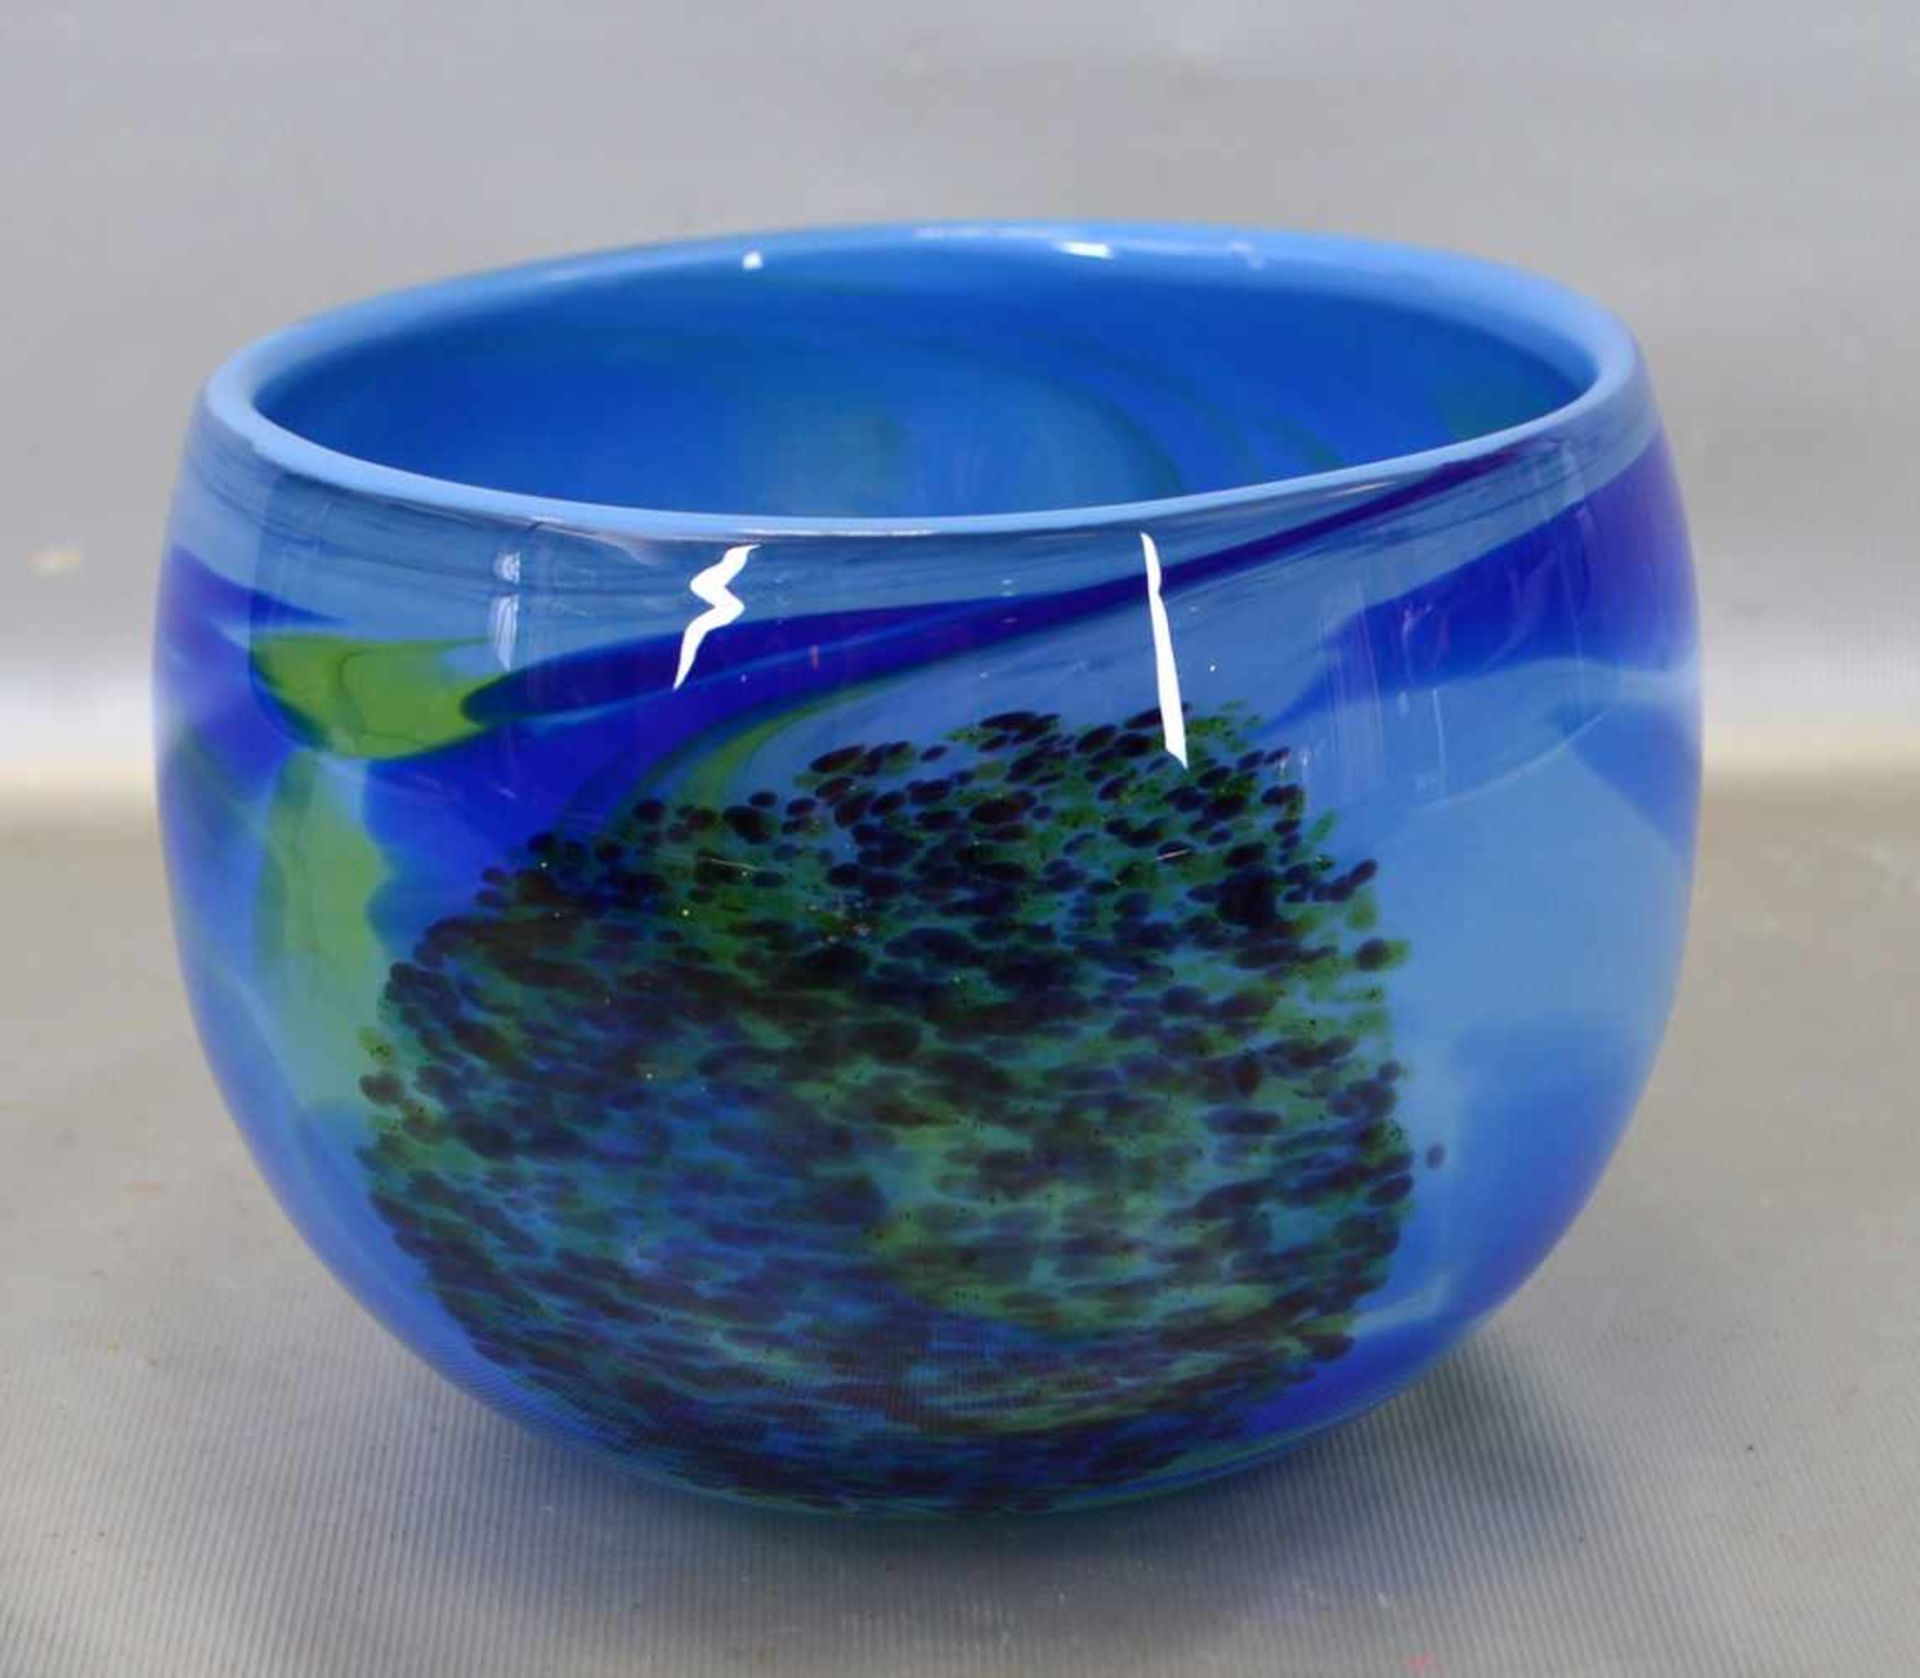 Schalefarbl. Glas, rund, mit blau/grüner Farbeinschmelzung, H 13 cm, Dm 16 cm, 70er Jahre